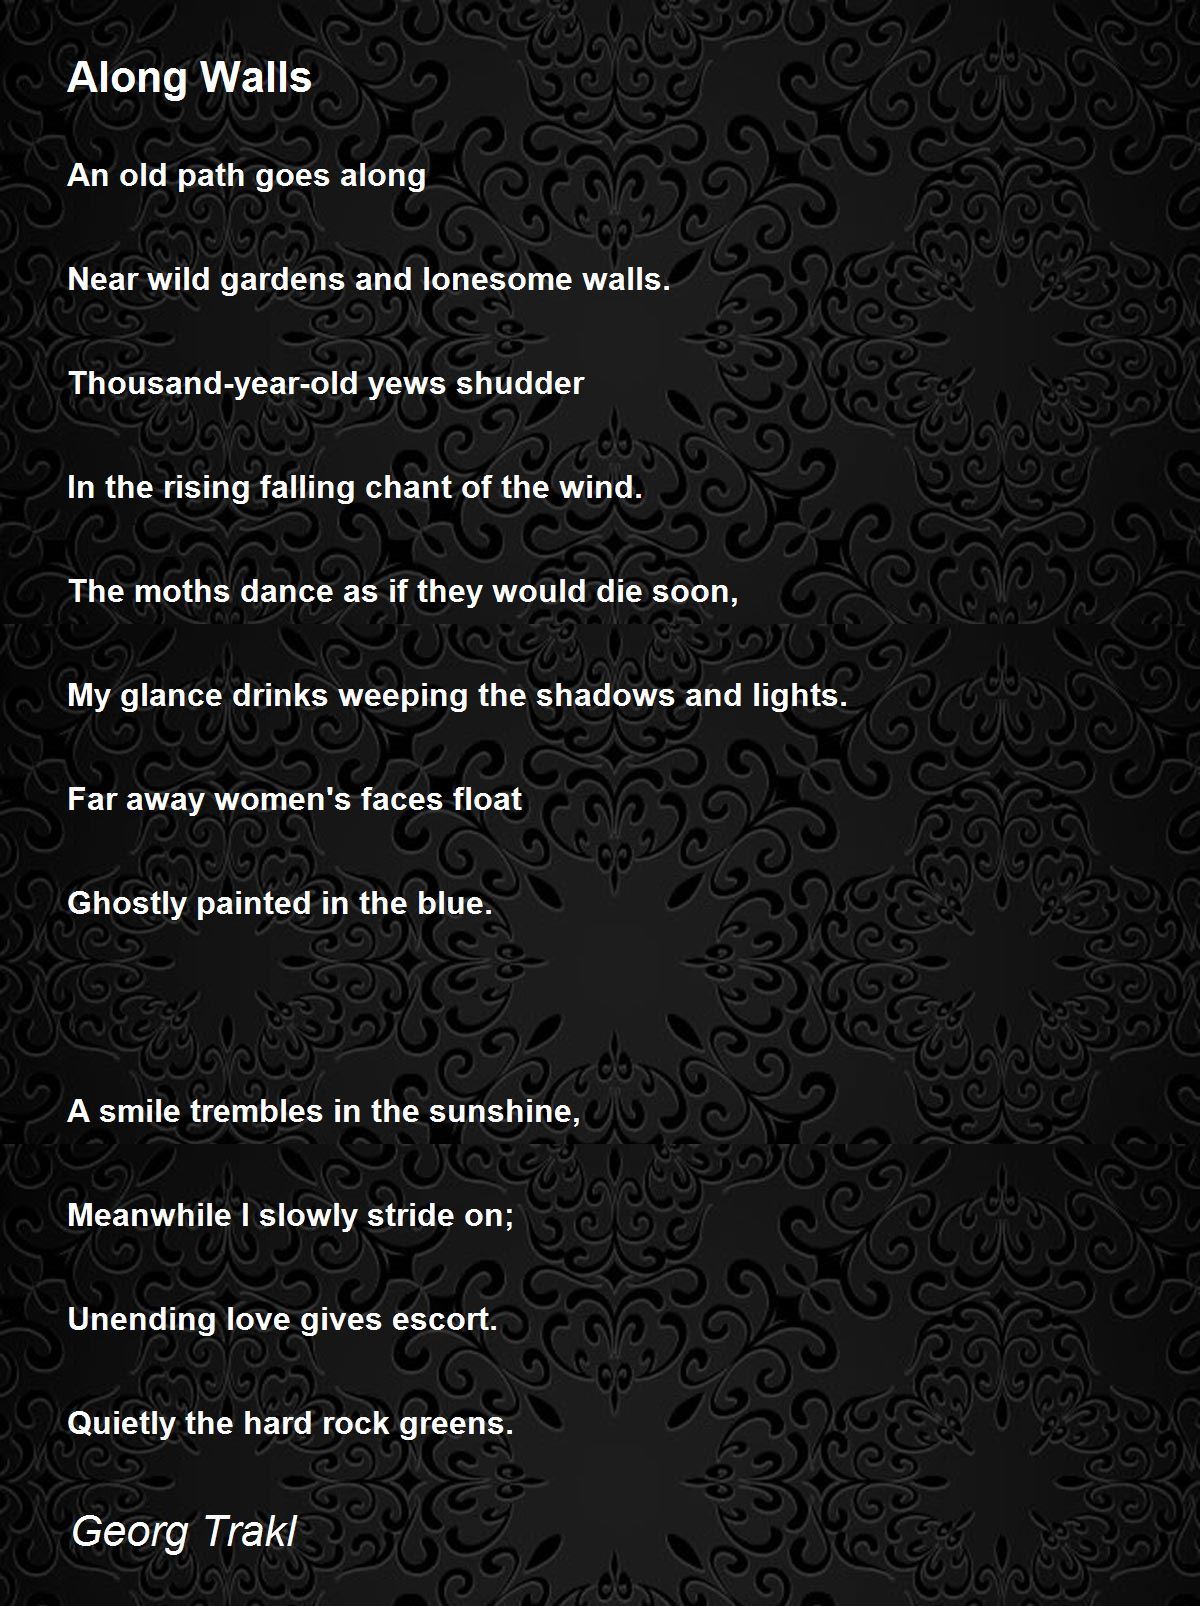 Along Walls - Along Walls Poem by Georg Trakl